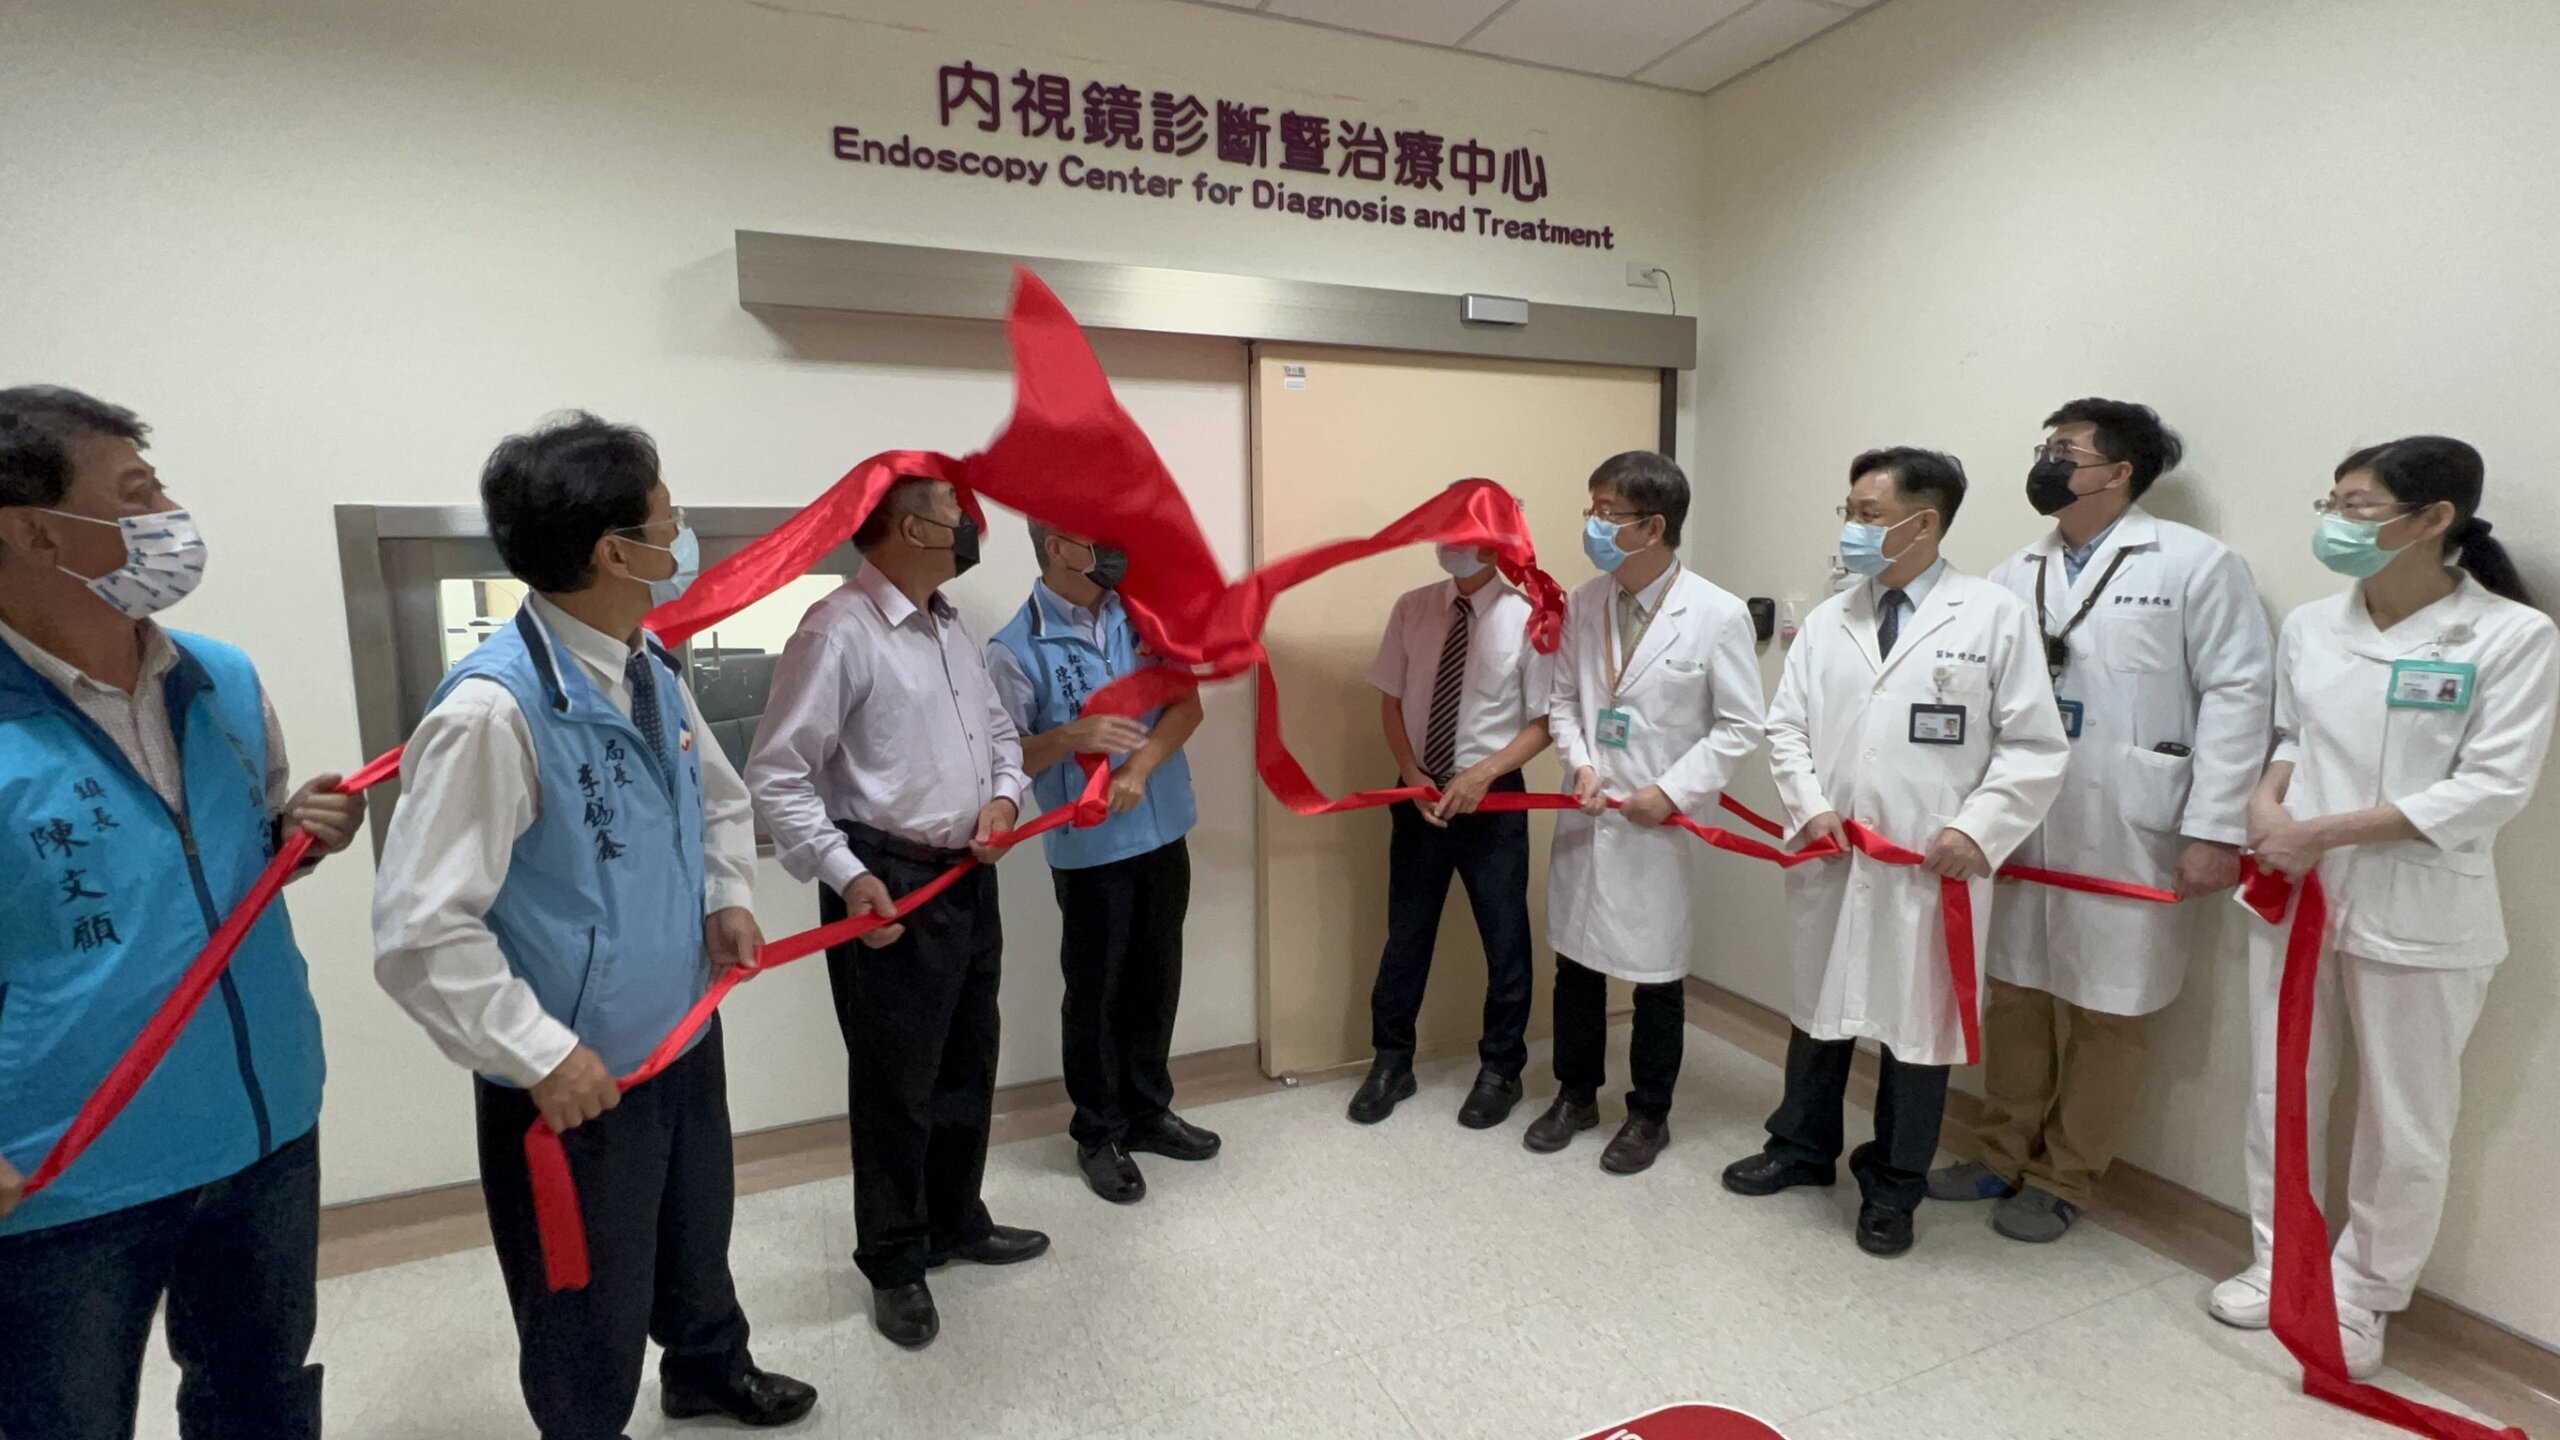 衛生福利部金門醫院嶄新內視鏡中心開幕 服務更升級